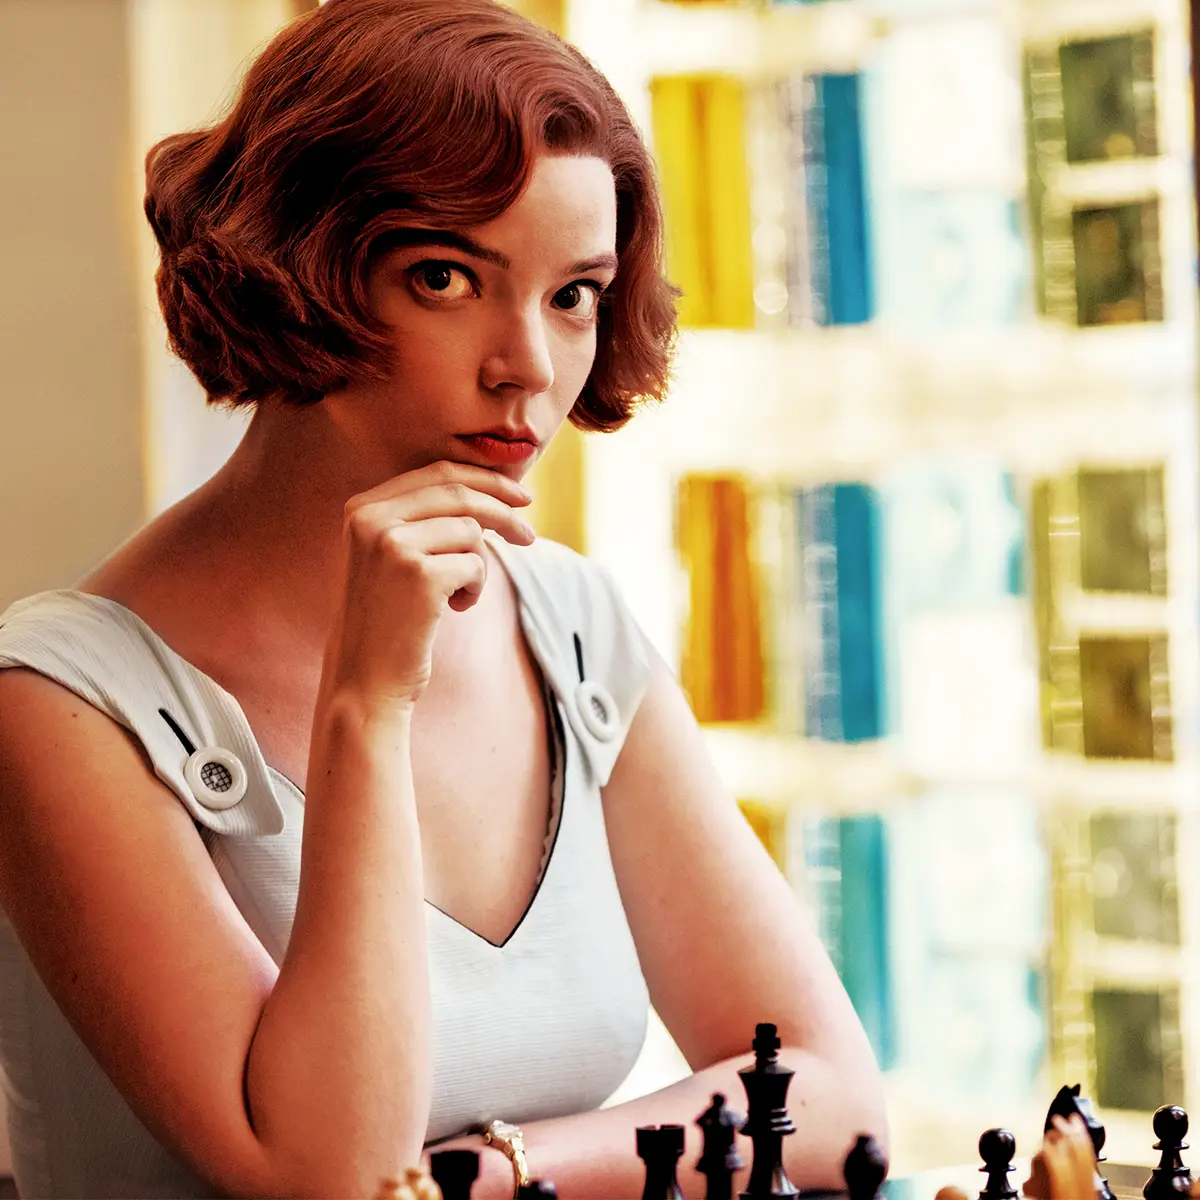 Xadrez: Como vencer utilizando o Gambito da Dama 